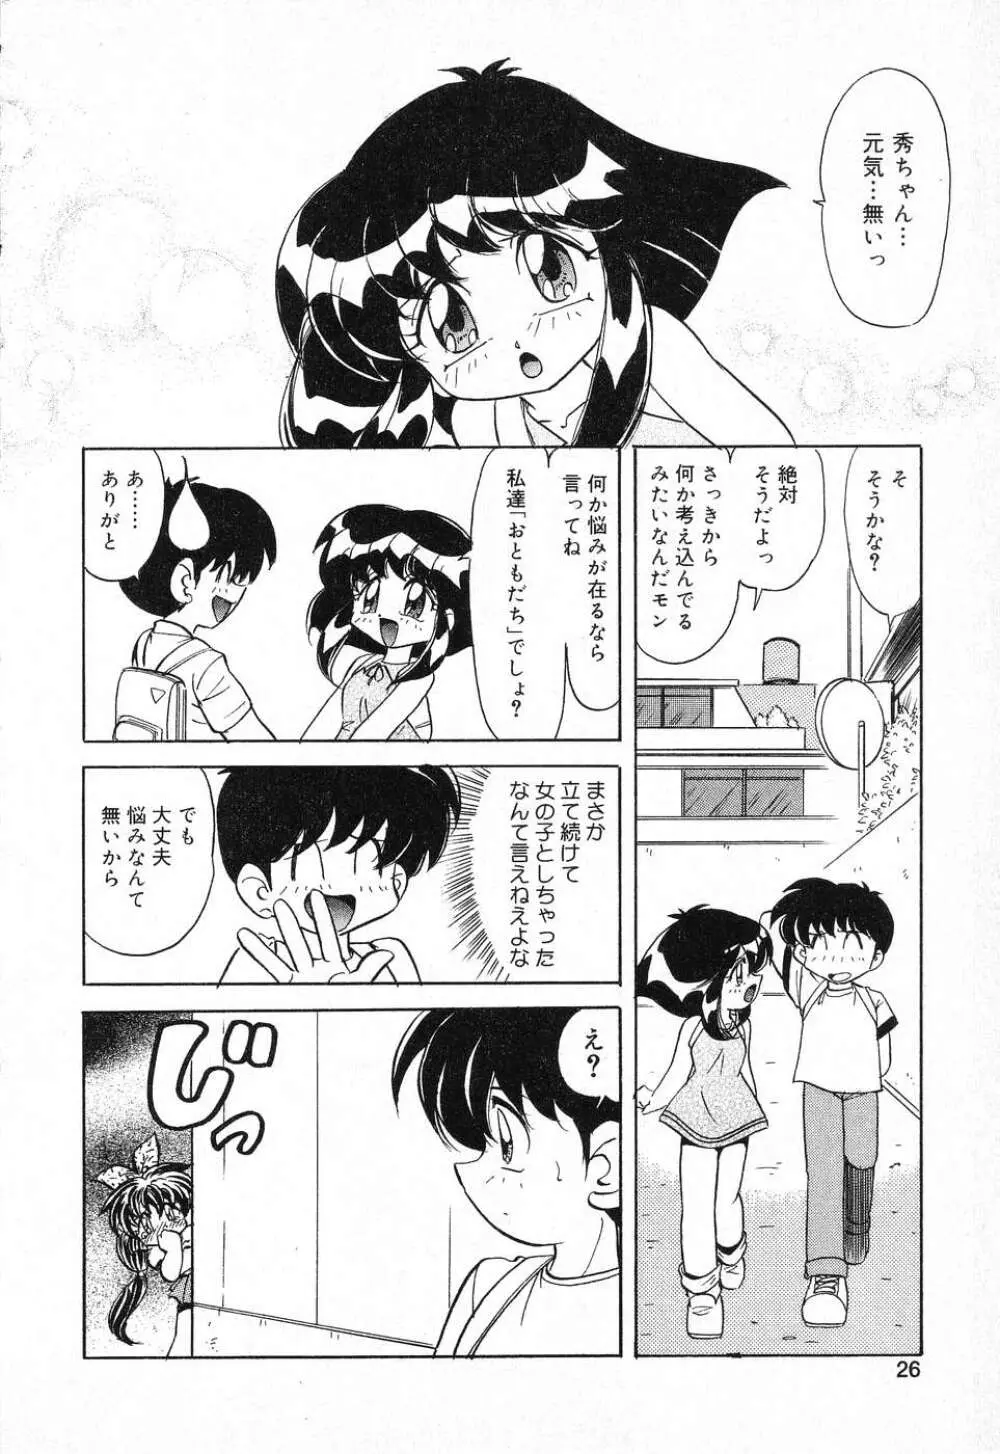 ぴゅあぷちっと Vol.1 27ページ